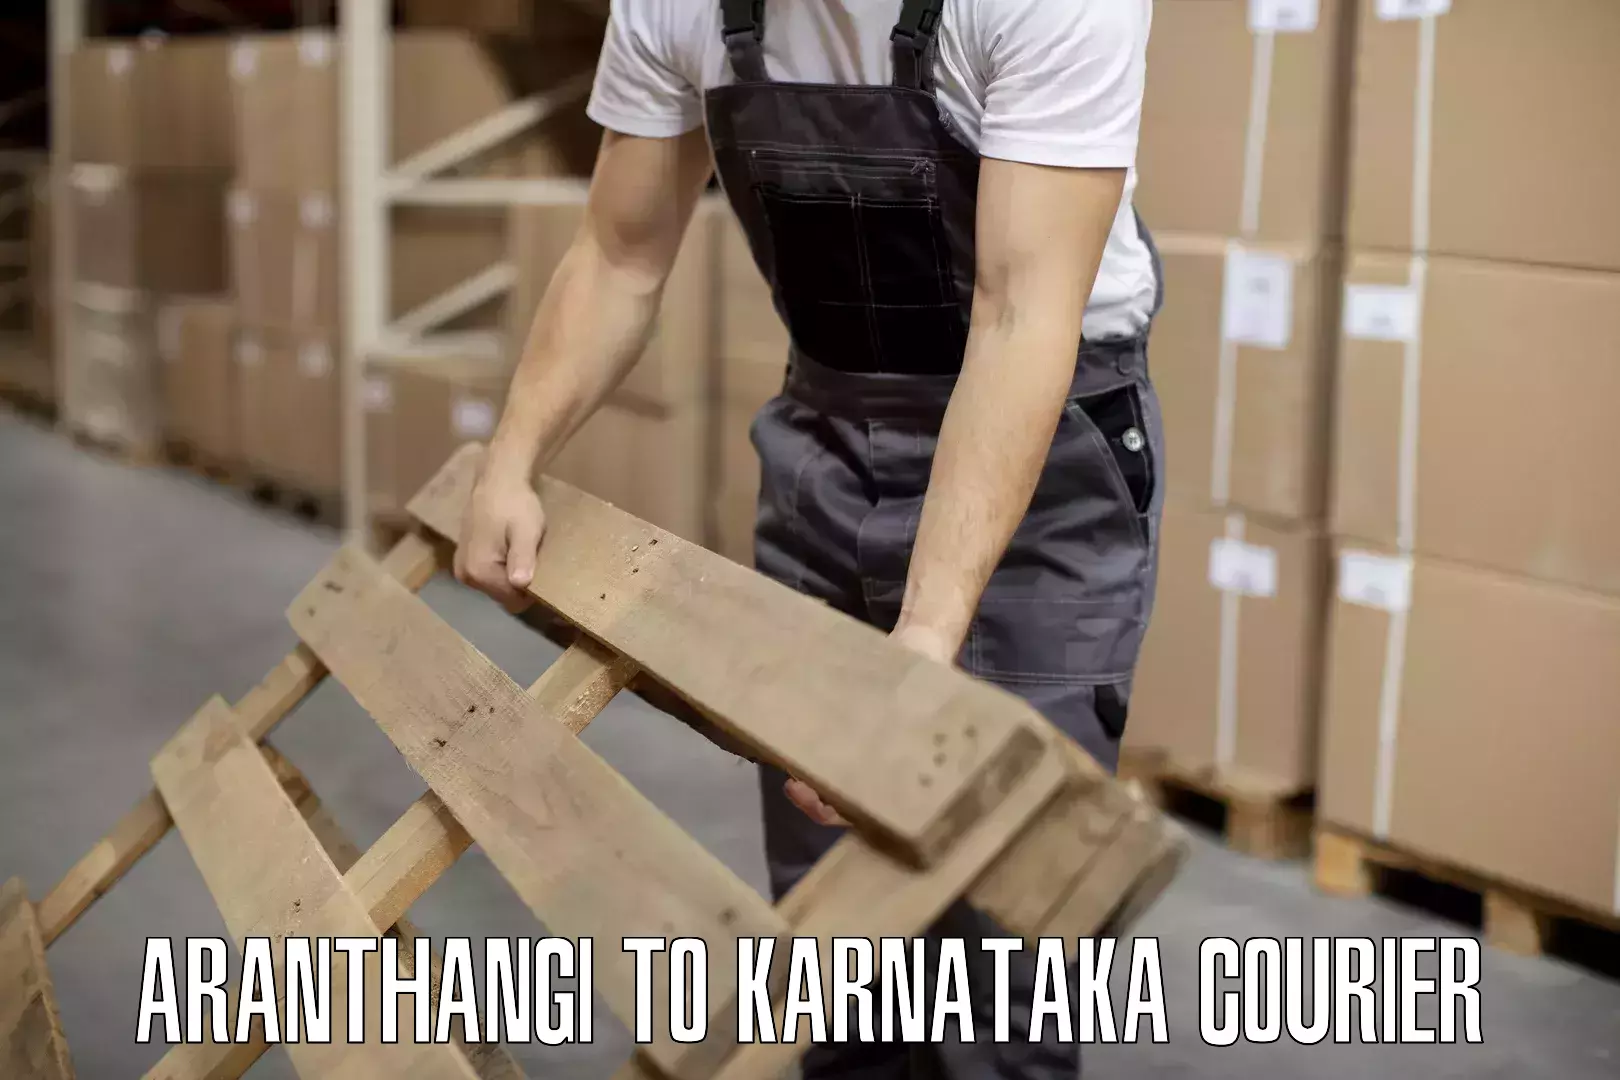 Artwork baggage courier Aranthangi to Karnataka